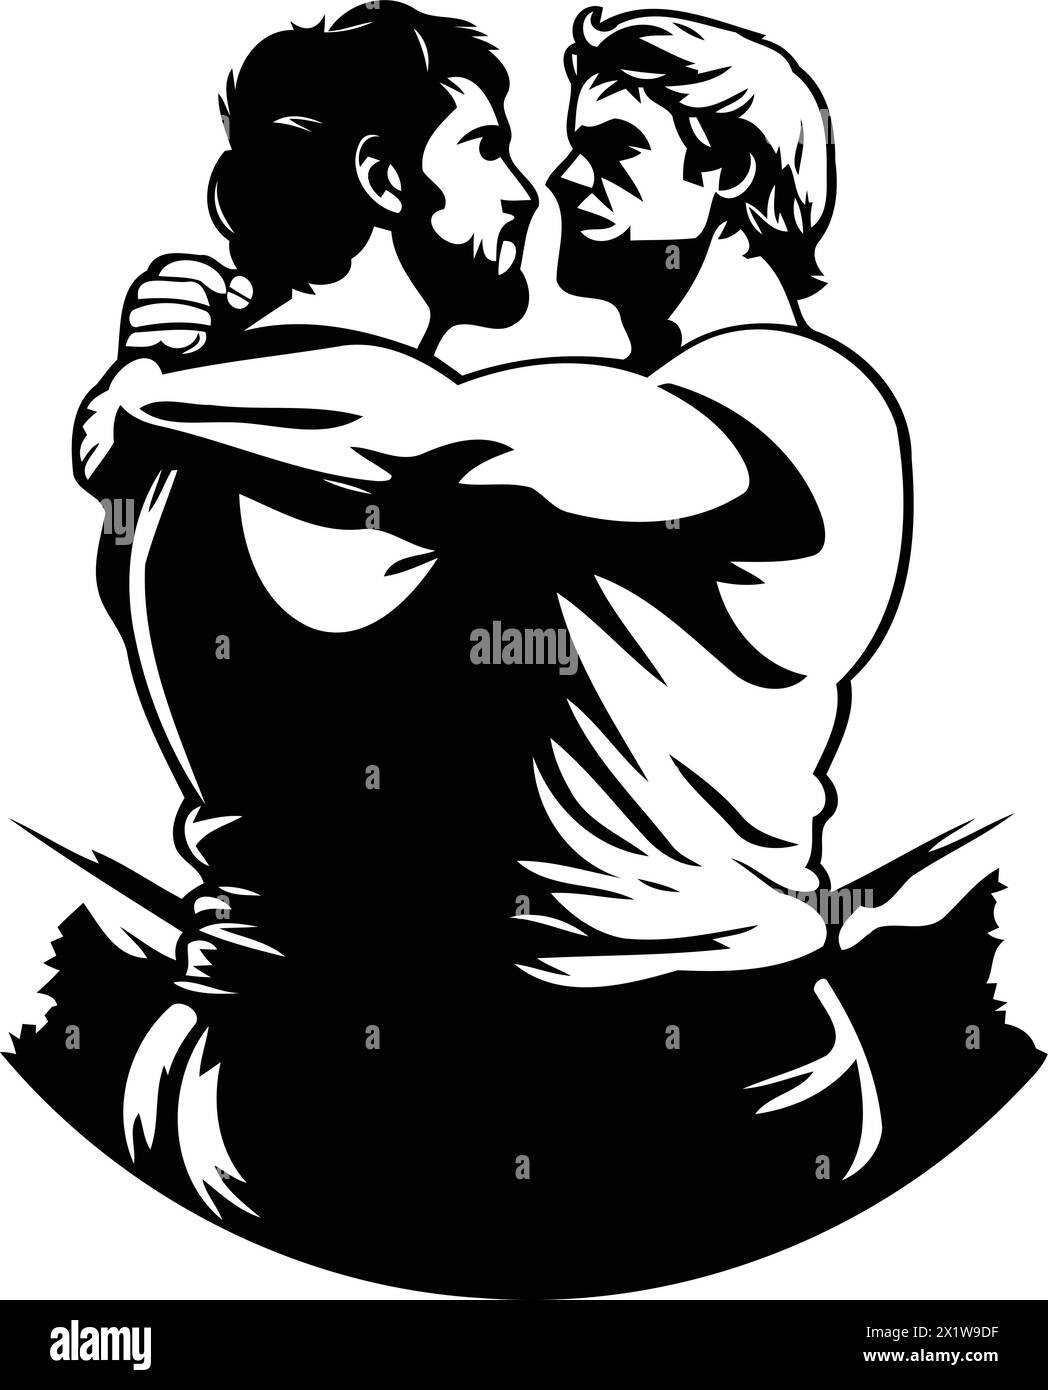 Zwei Männer umarmen sich gegenseitig. Vektor-Illustration eines liebevollen Paares. Stock Vektor